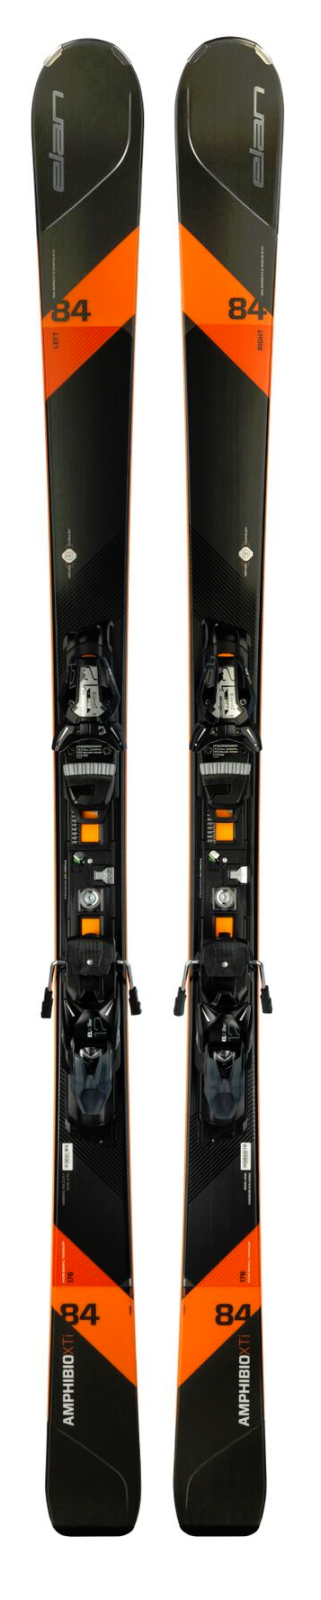 sportovní sjezdové lyže Elan Amphibio 84 XTi Fusion